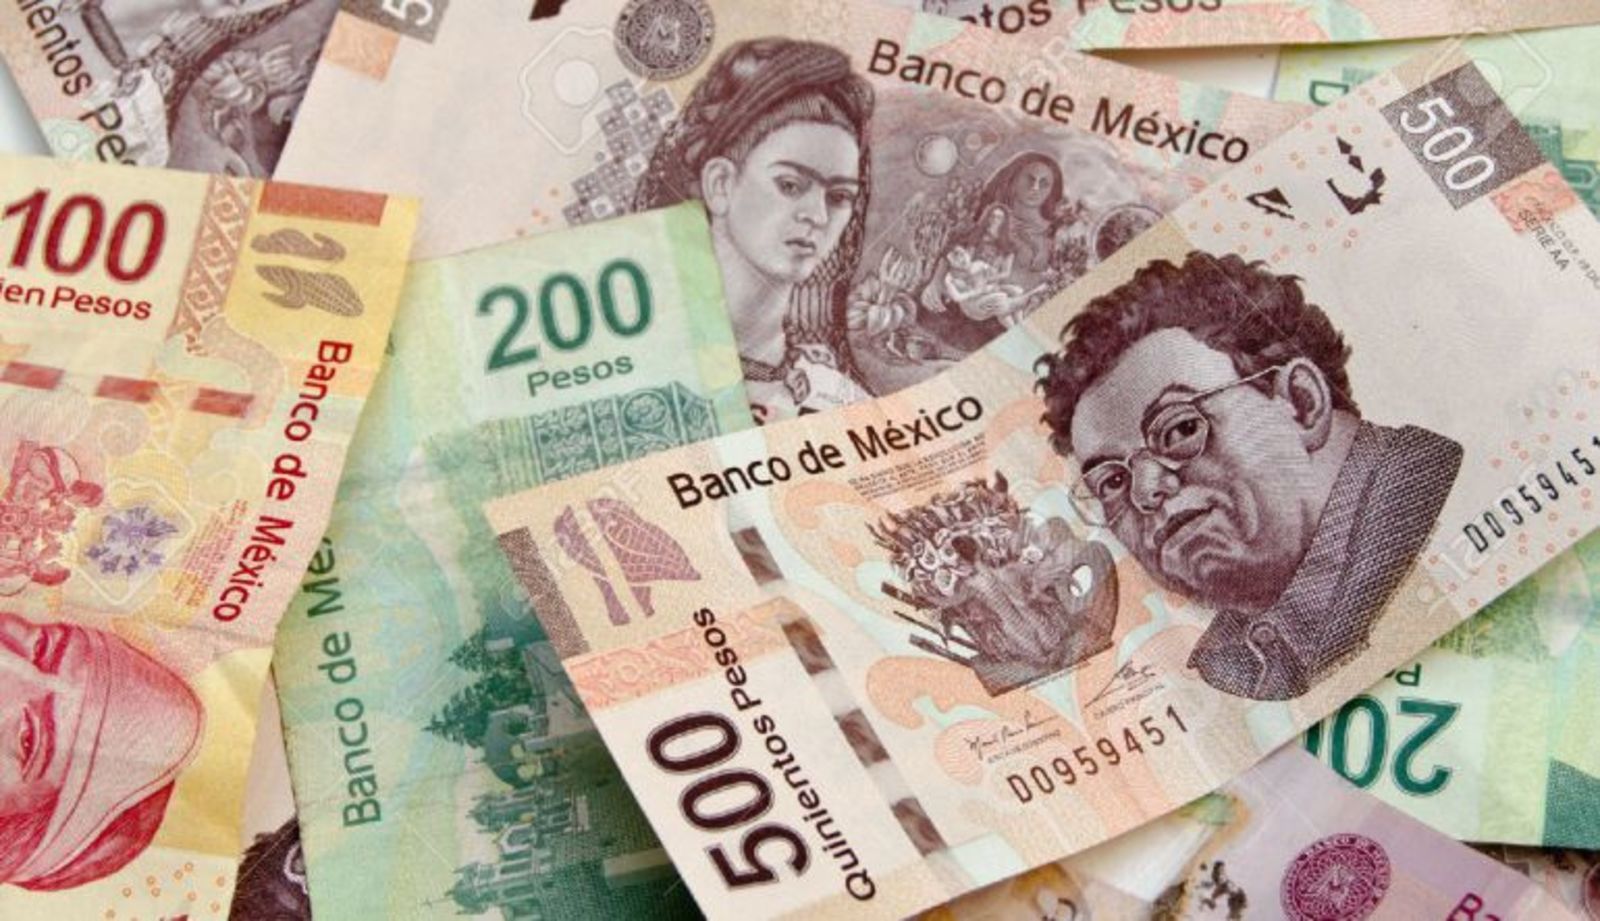 De acuerdo al Banco de México el papel billete de 20 pesos tenía una vida útil en circulación en las calles de 8.1 meses. (ARCHIVO)